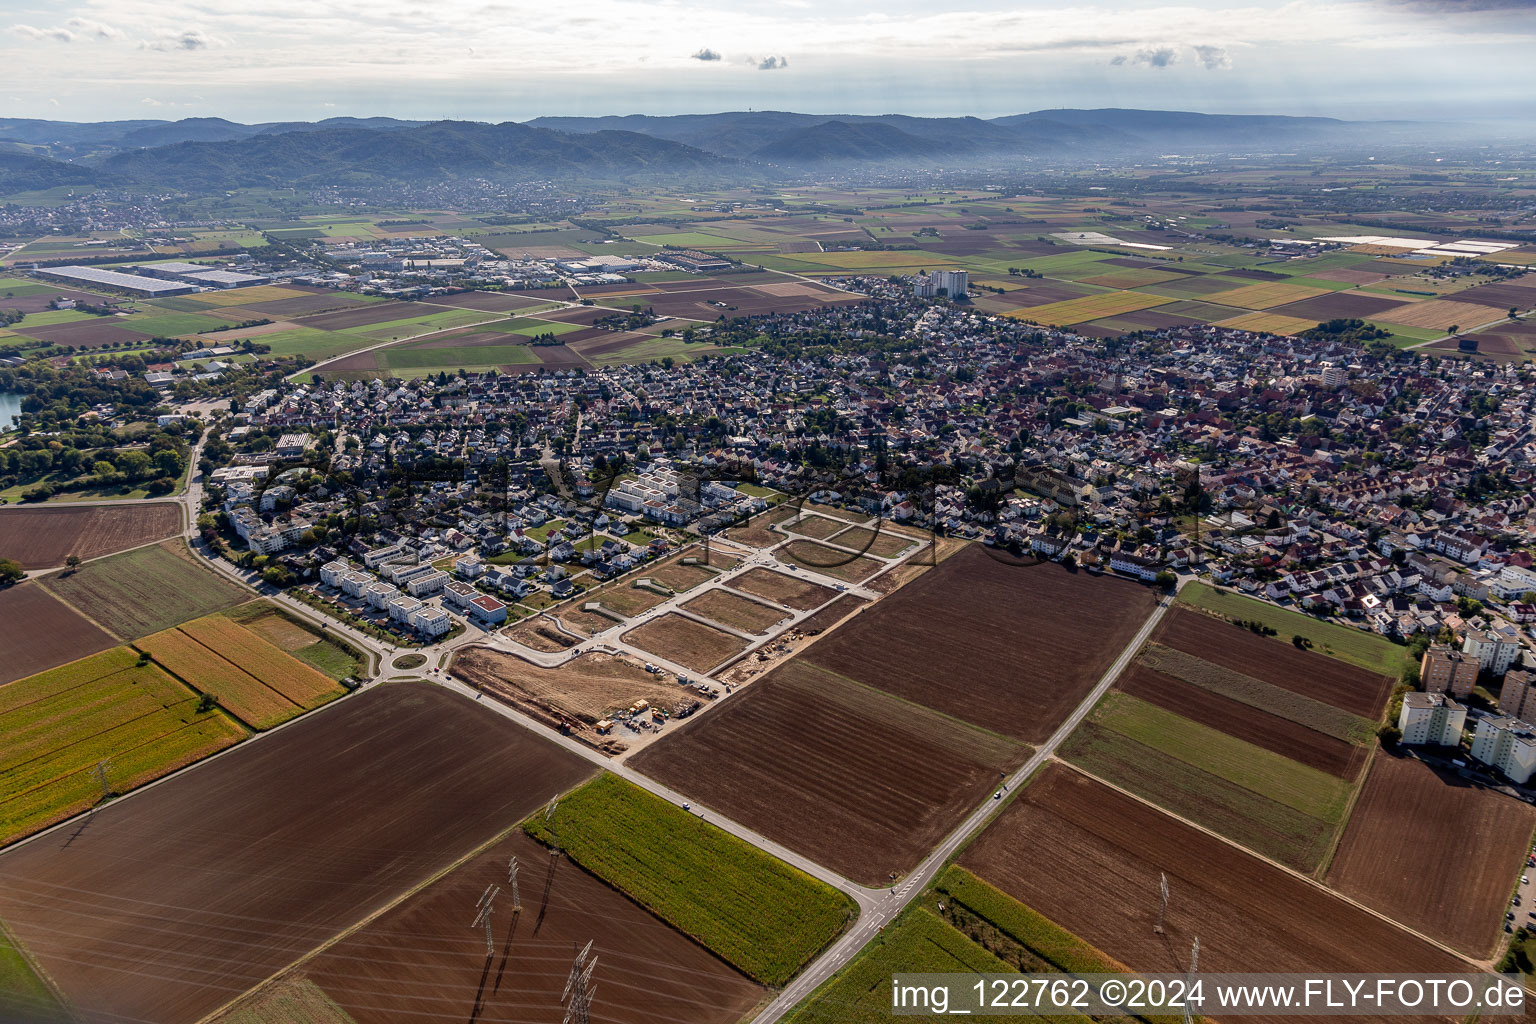 Vue aérienne de Devant les pentes des montagnes de l'Odenwald dans le paysage de la vallée de la plaine du Rhin à Heddesheim dans le département Bade-Wurtemberg, Allemagne